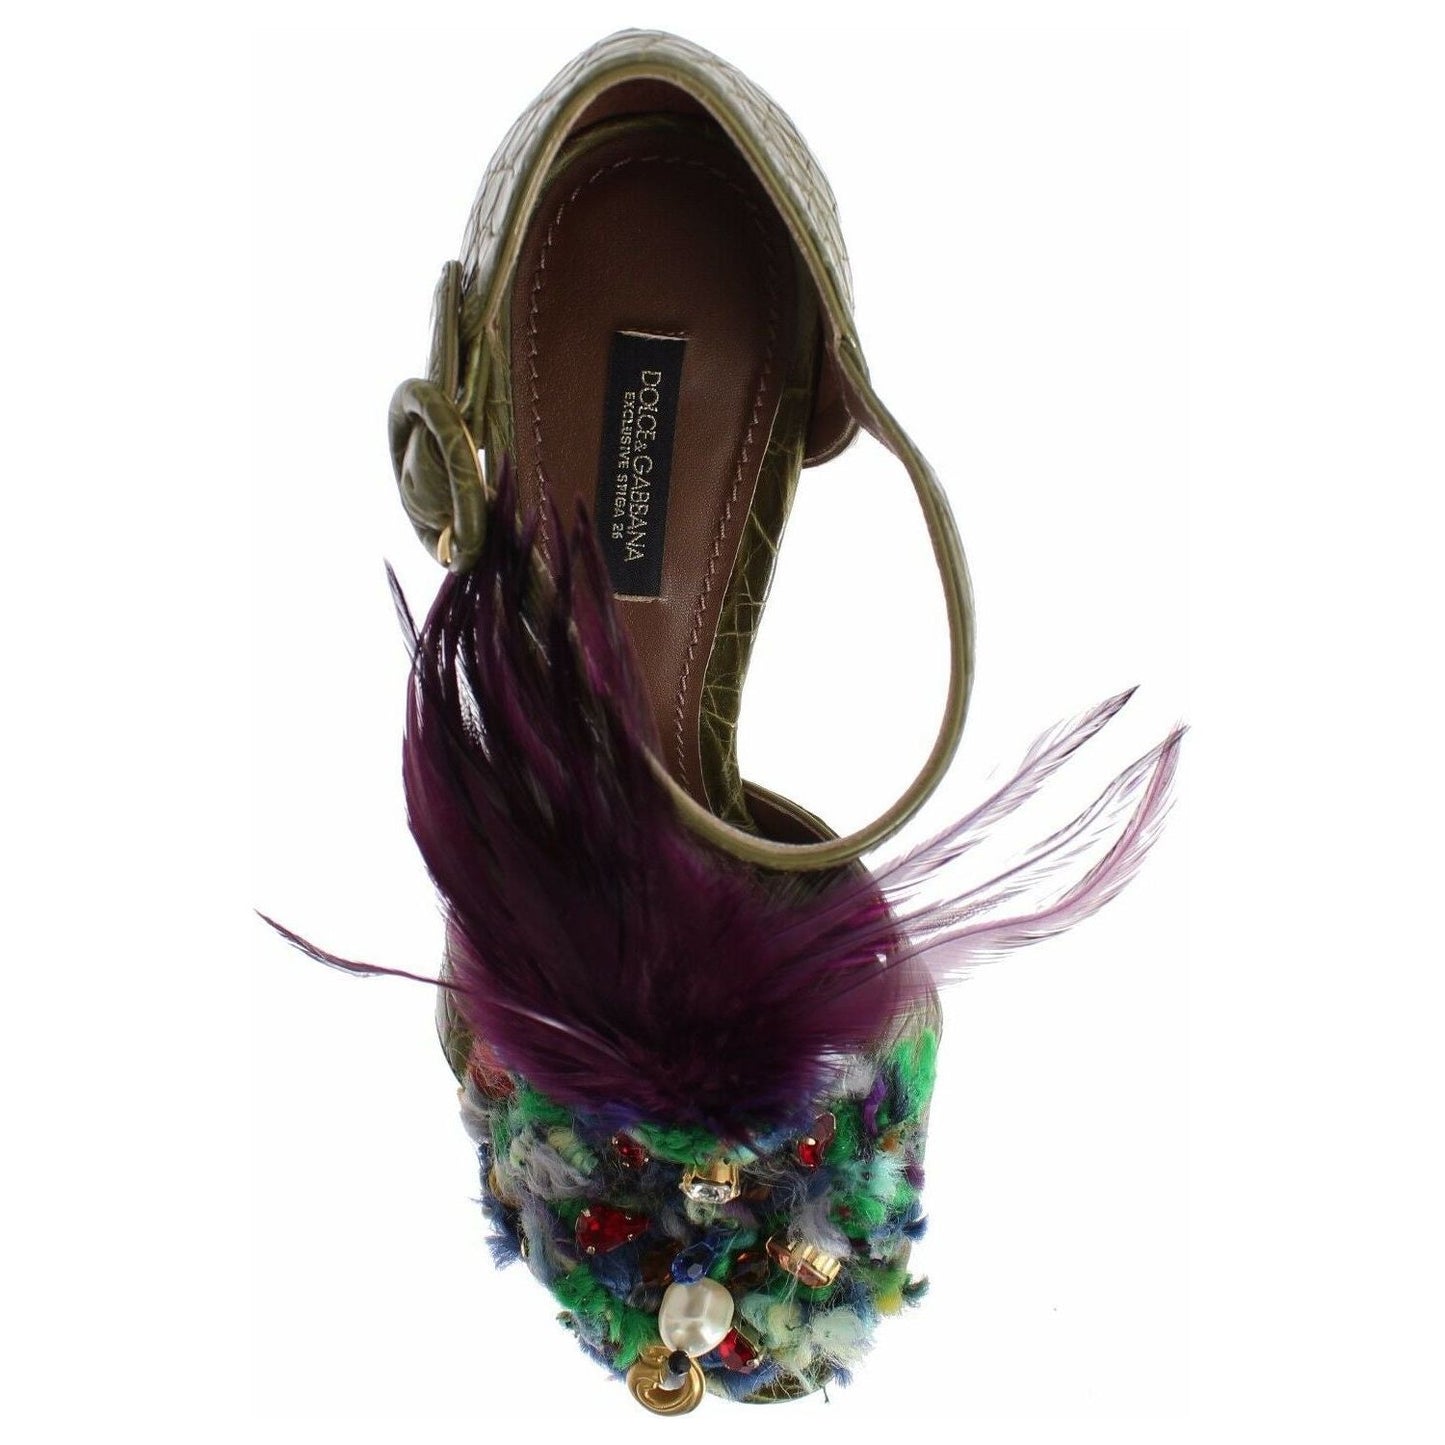 Dolce & Gabbana Crystal Enchanted Ankle Strap Sandals green-leather-crystal-platform-sandal-shoes s-l1600-2022-01-10T154706.607-d61cf9c4-258.jpg